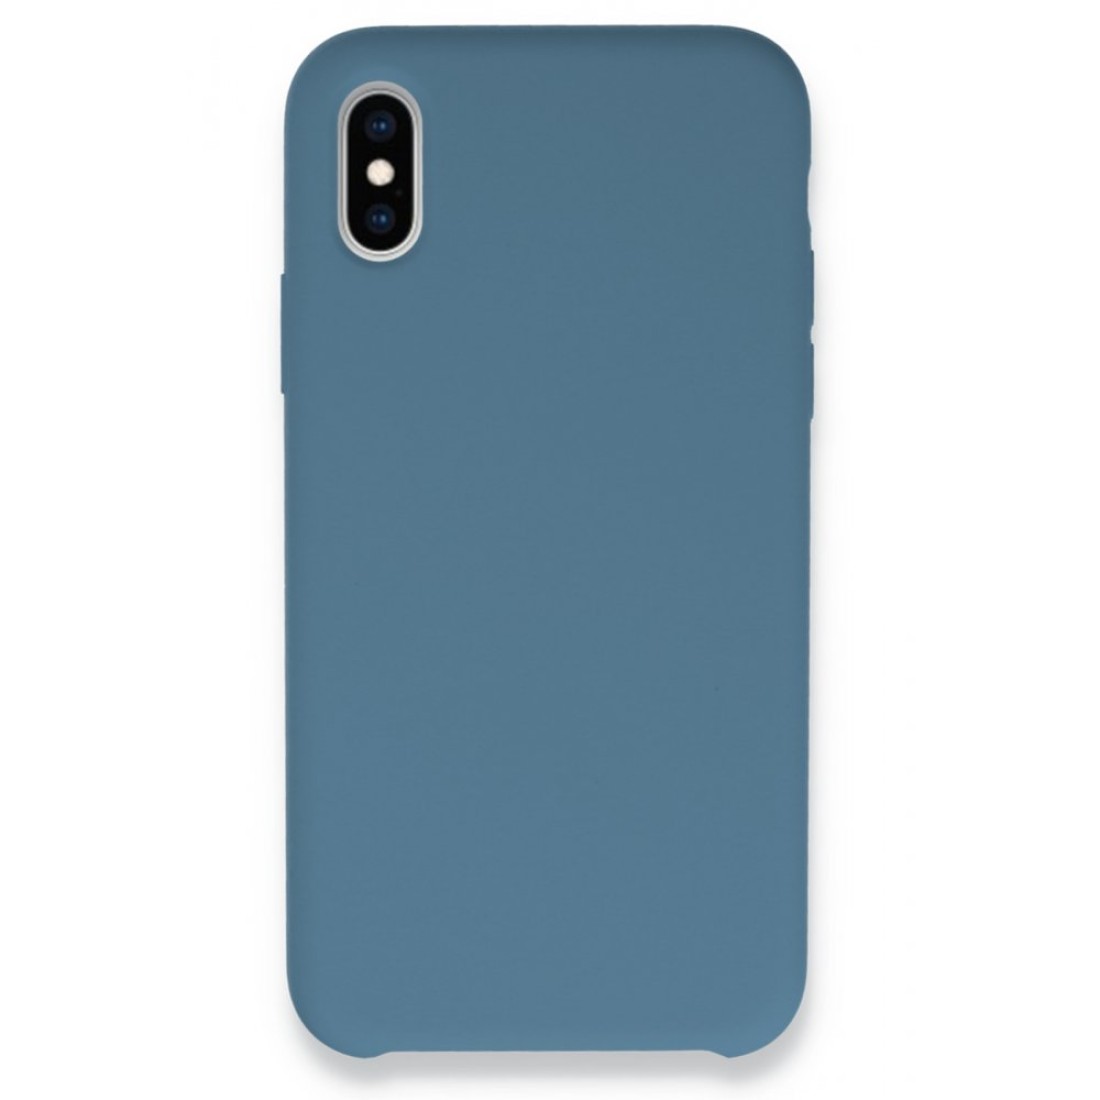 Apple iPhone XS Kılıf Lansman Legant Silikon - Açık Mavi